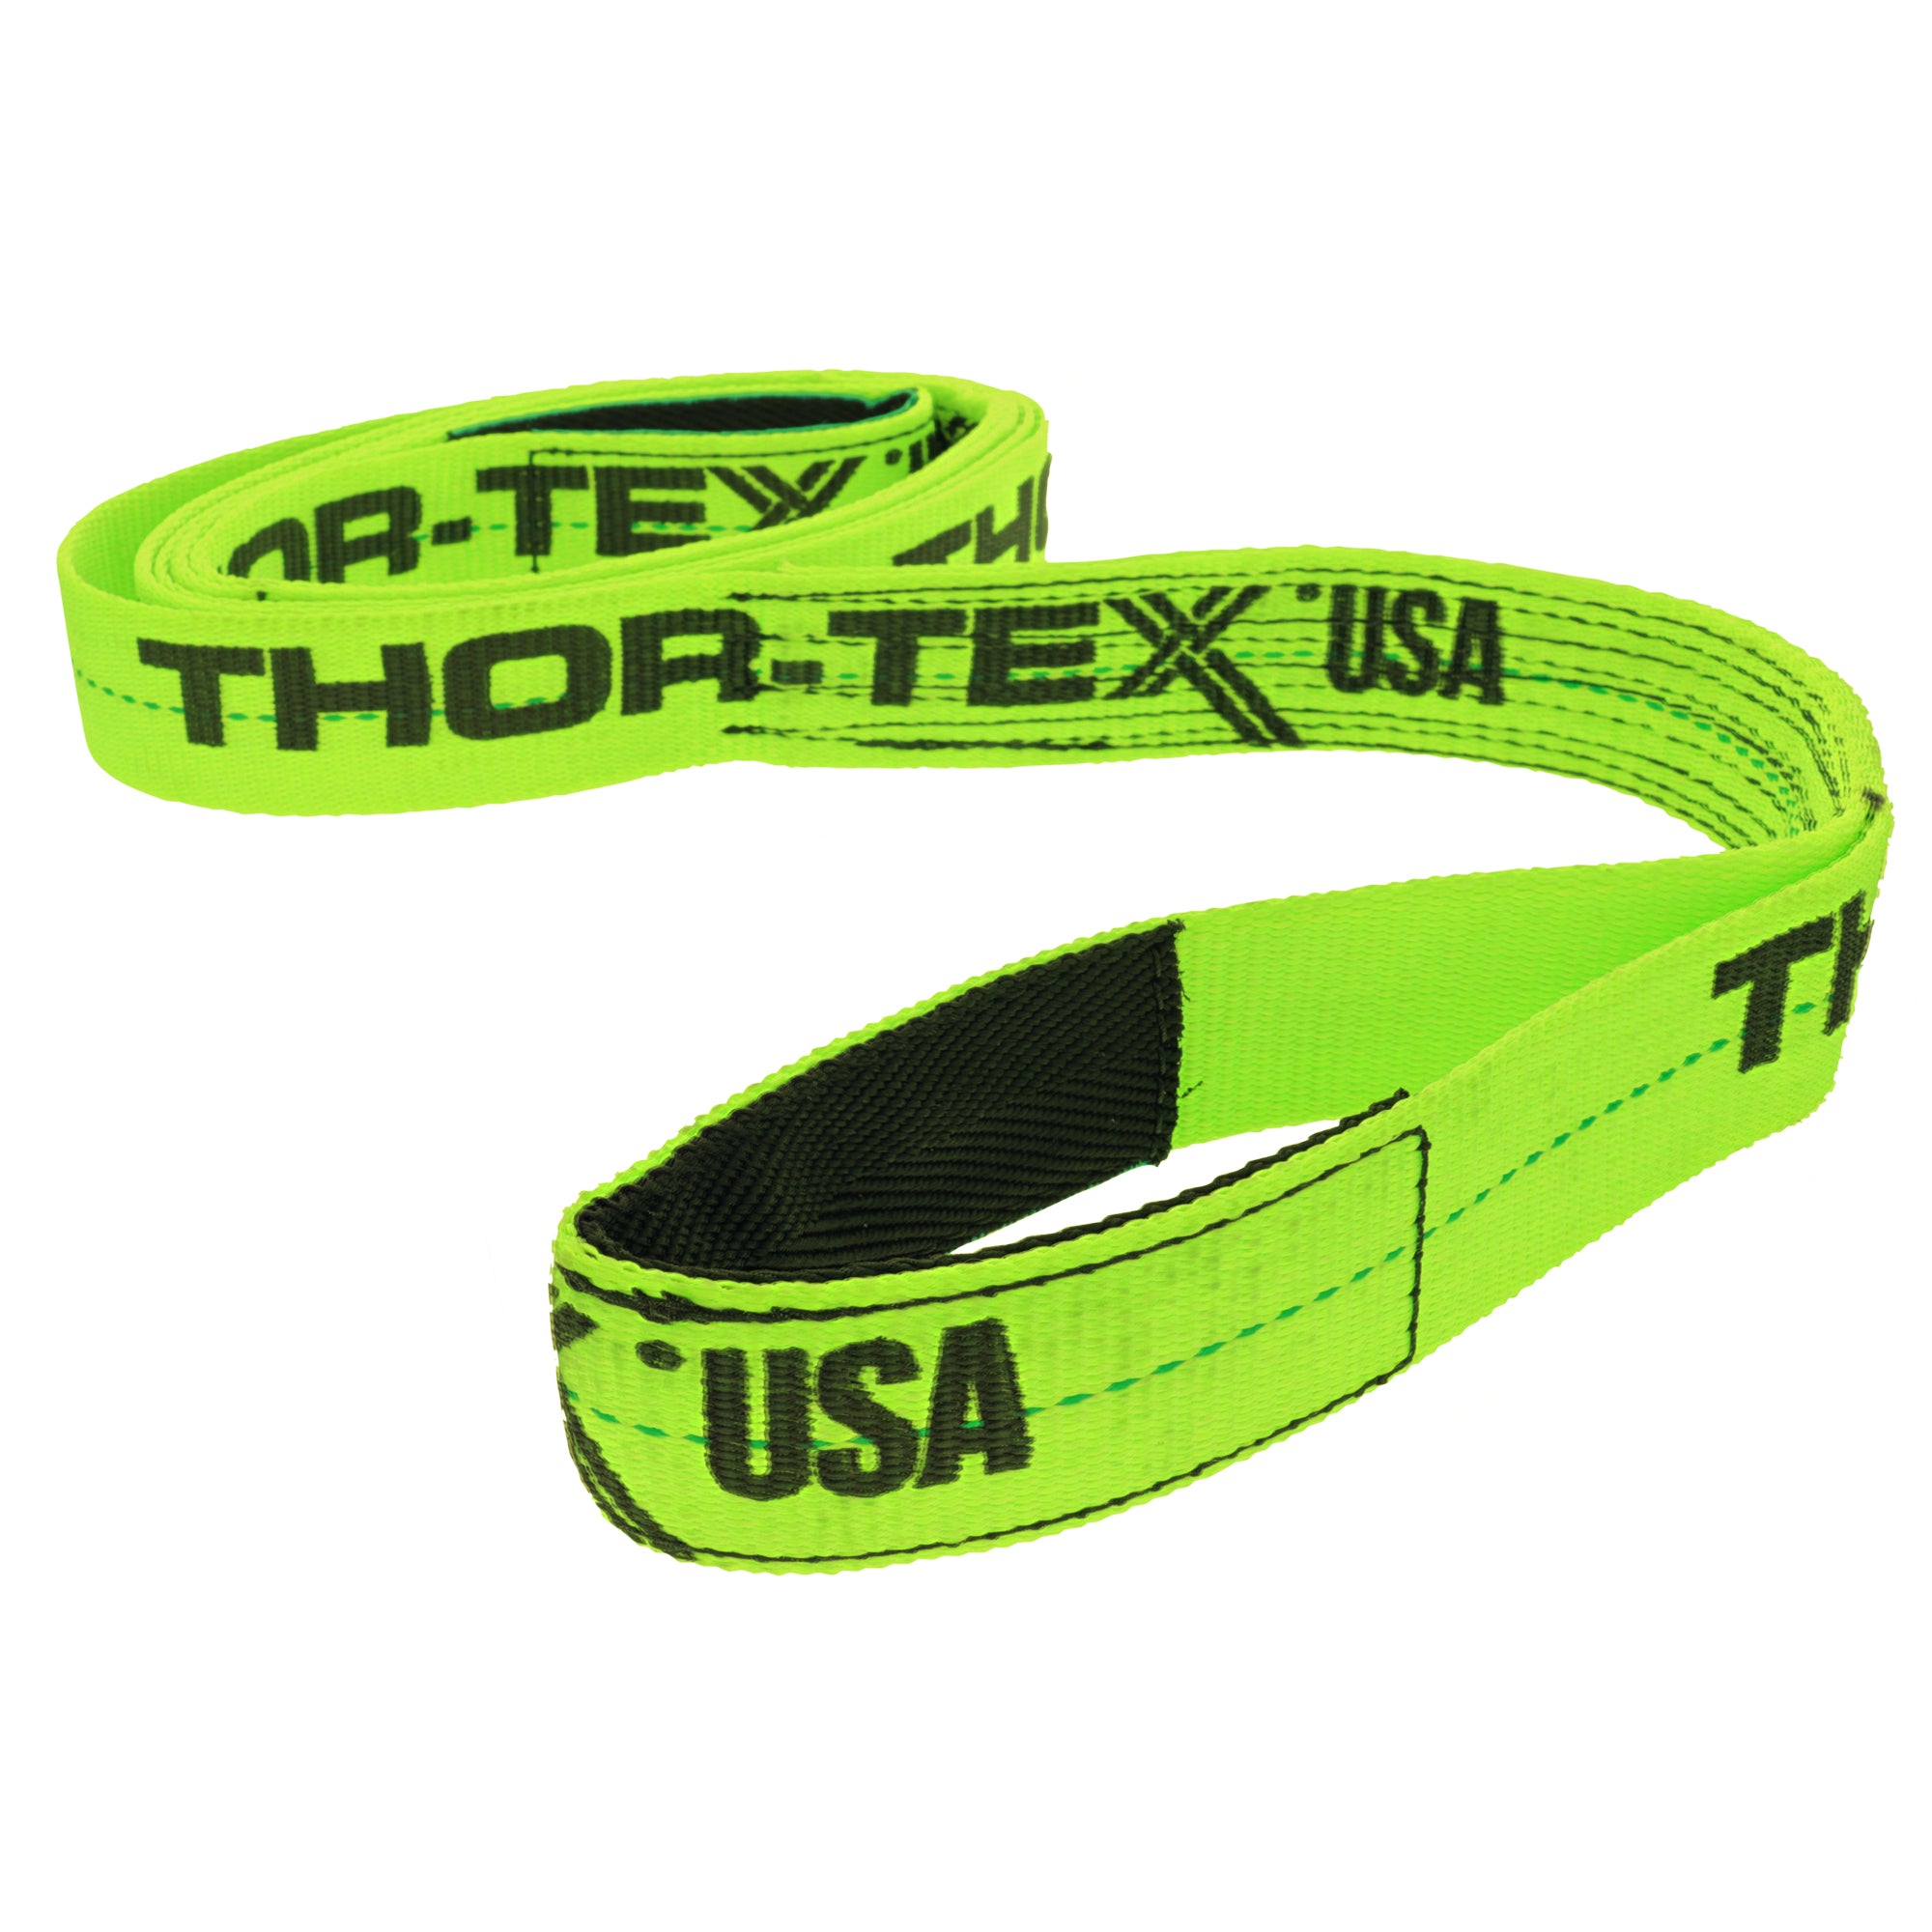 THOR-TEX USA 1 Ply 1